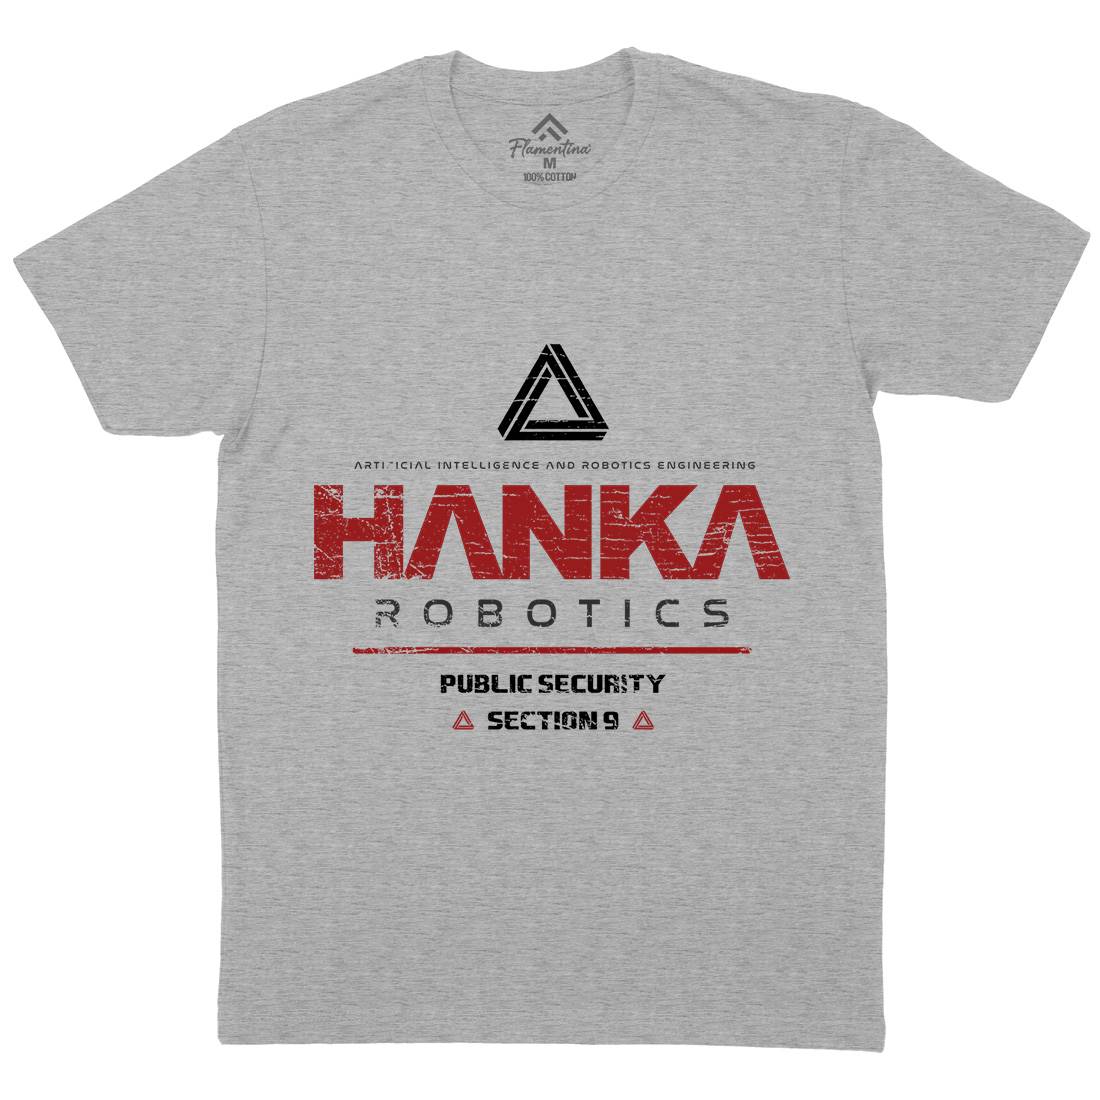 Hanka Robotics Mens Organic Crew Neck T-Shirt Space D194